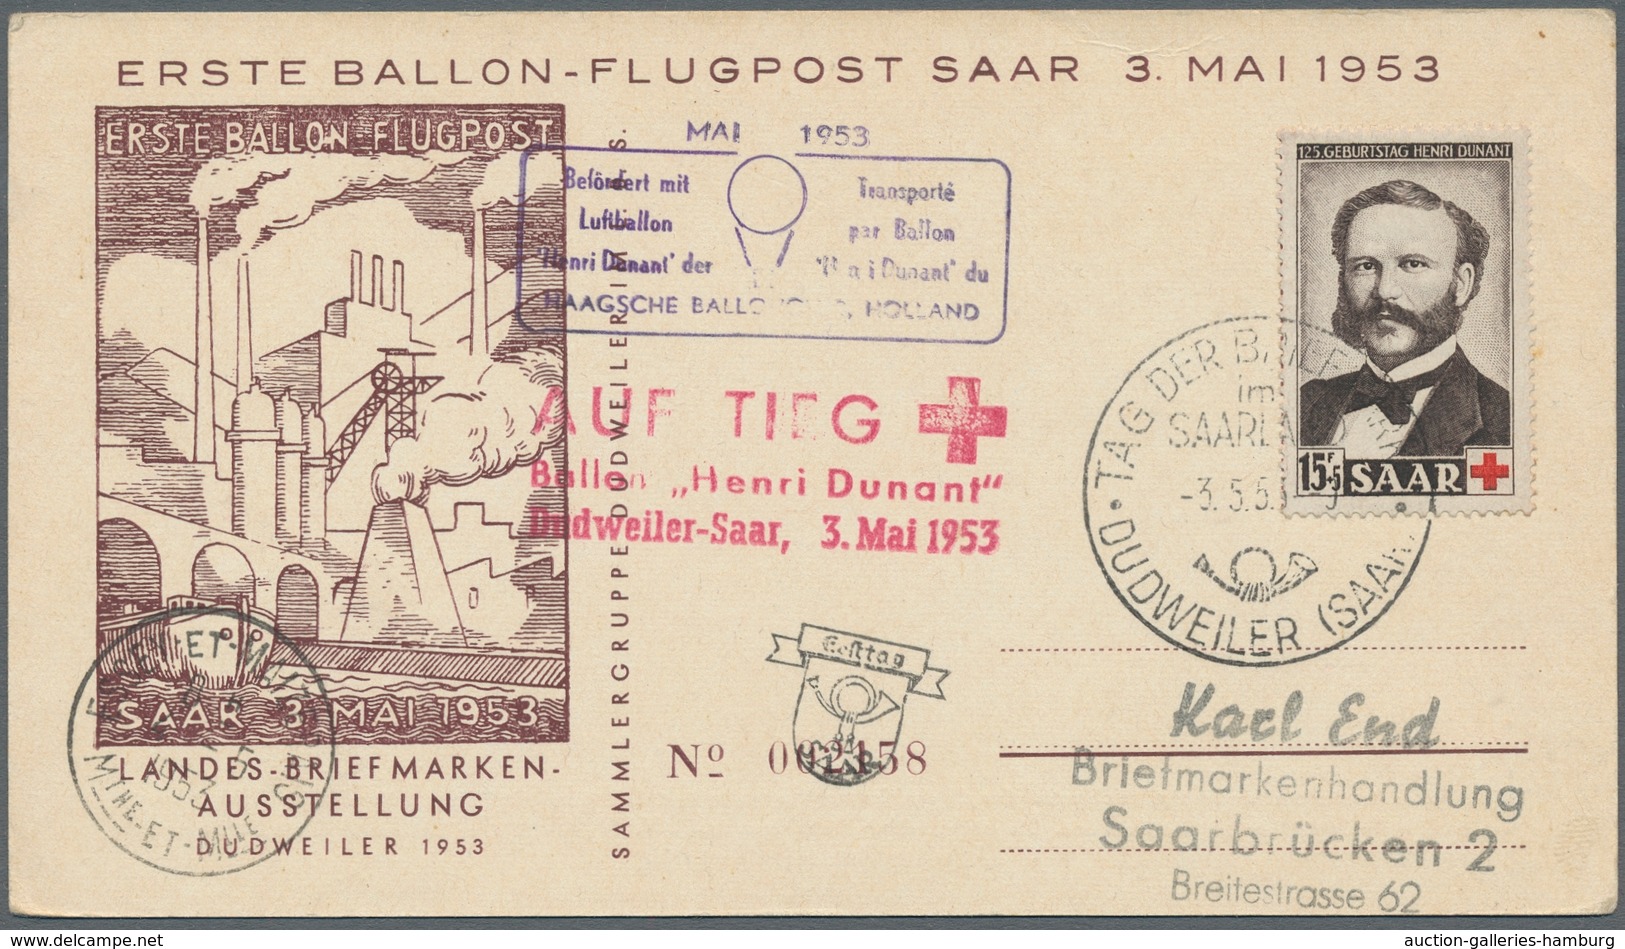 Saarland (1947/56): 1953, "Henri Dunant", sieben Ersttagskarten, alle per Ballonpost befördert, deko